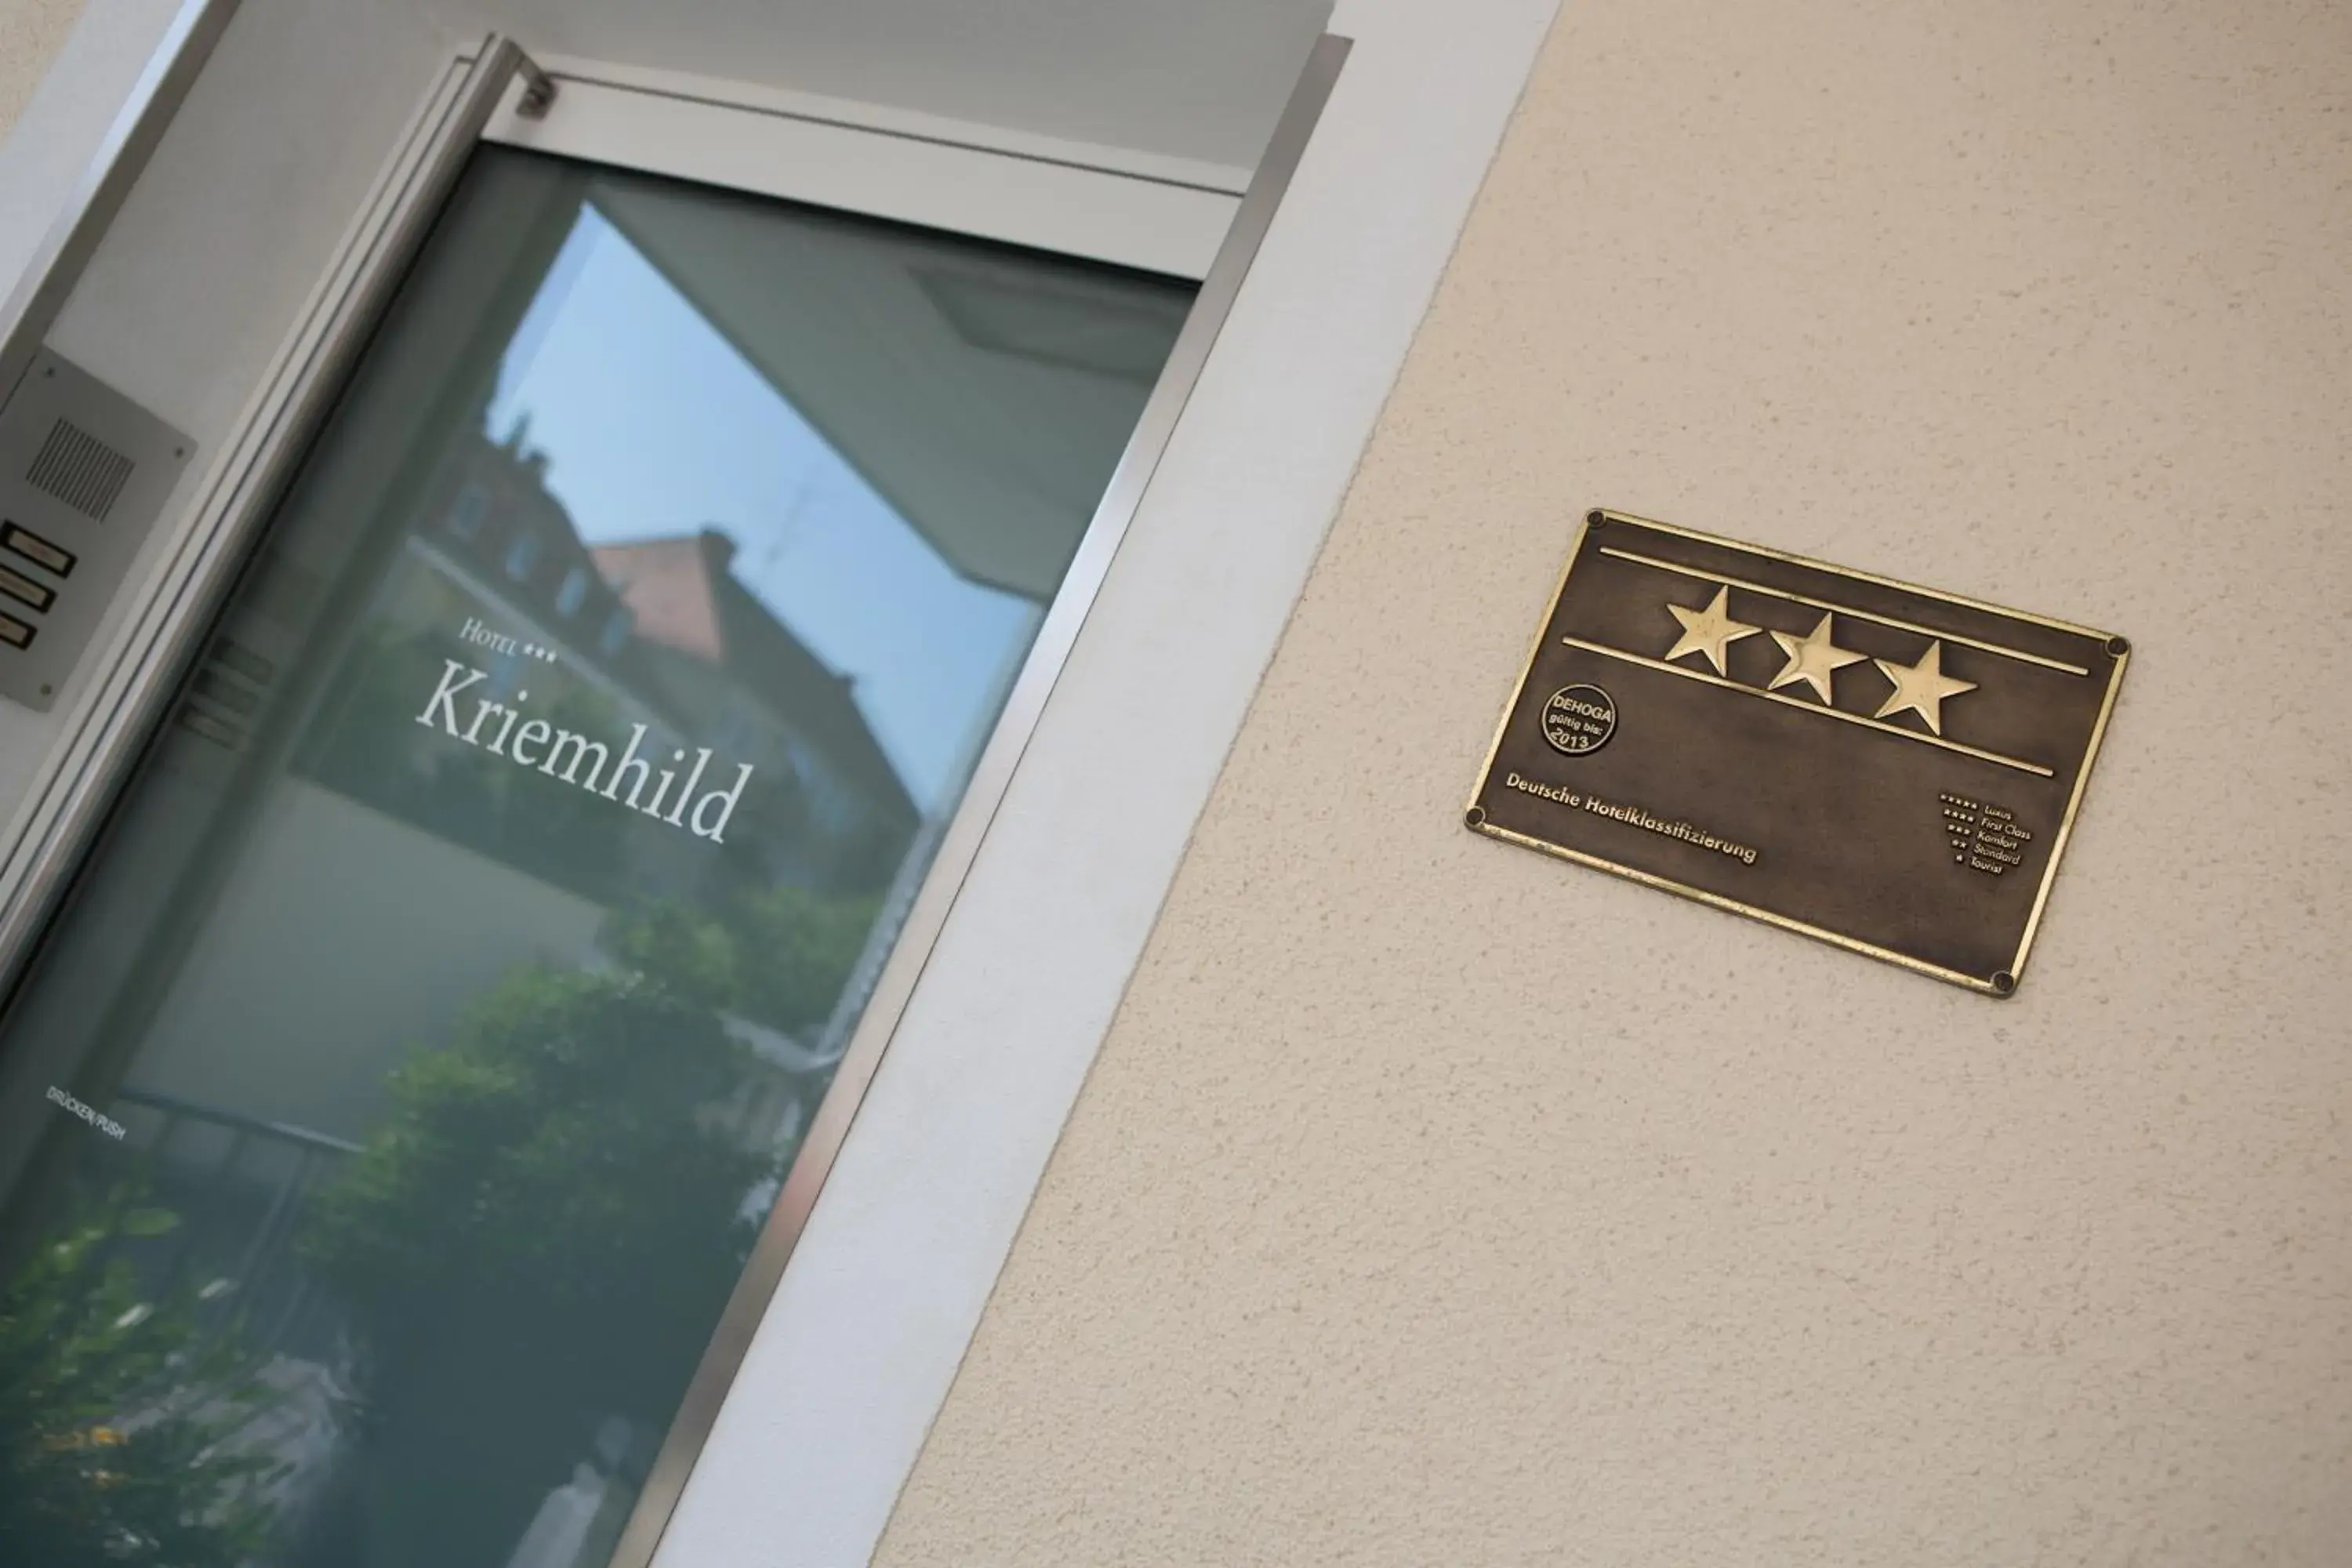 Certificate/Award in Hotel Kriemhild am Hirschgarten